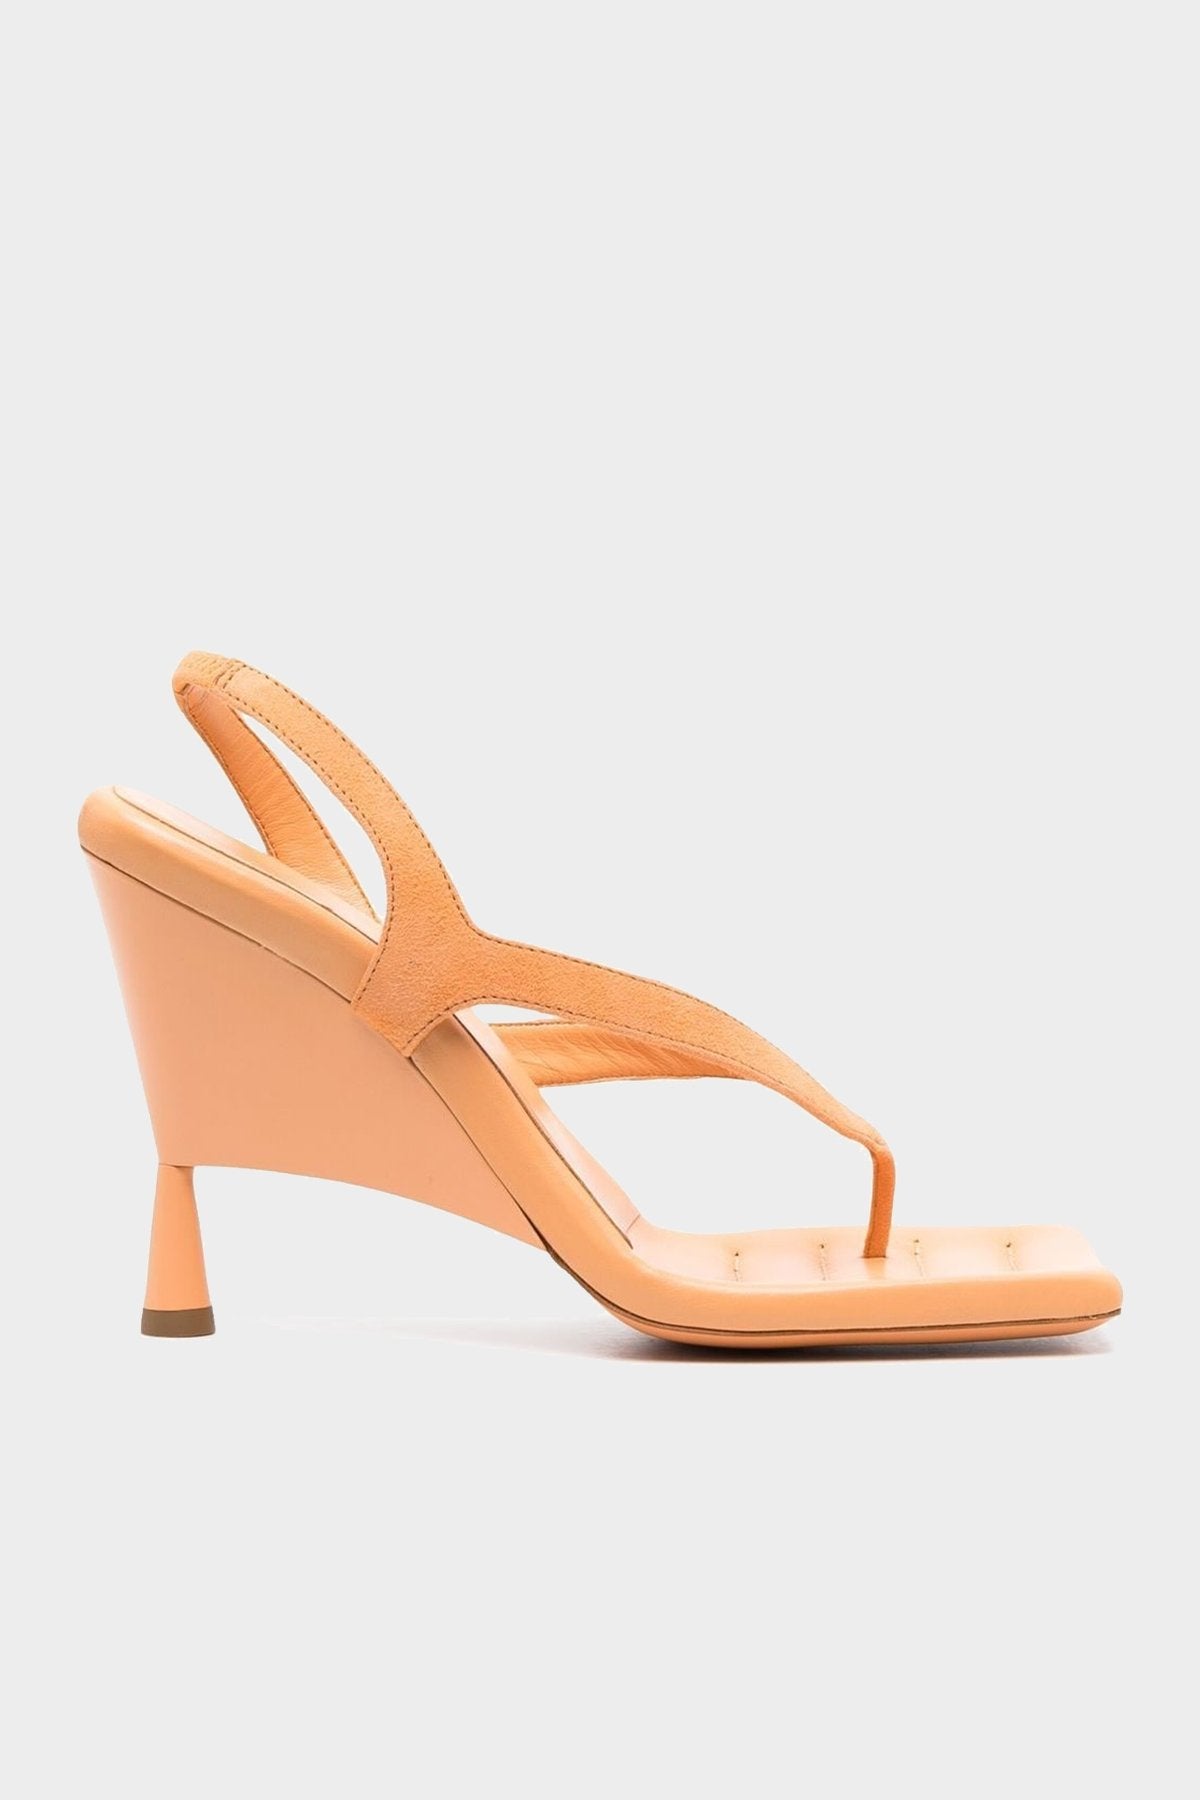 Suede Thong Wedge Sandal in Light Orange - shop-olivia.com